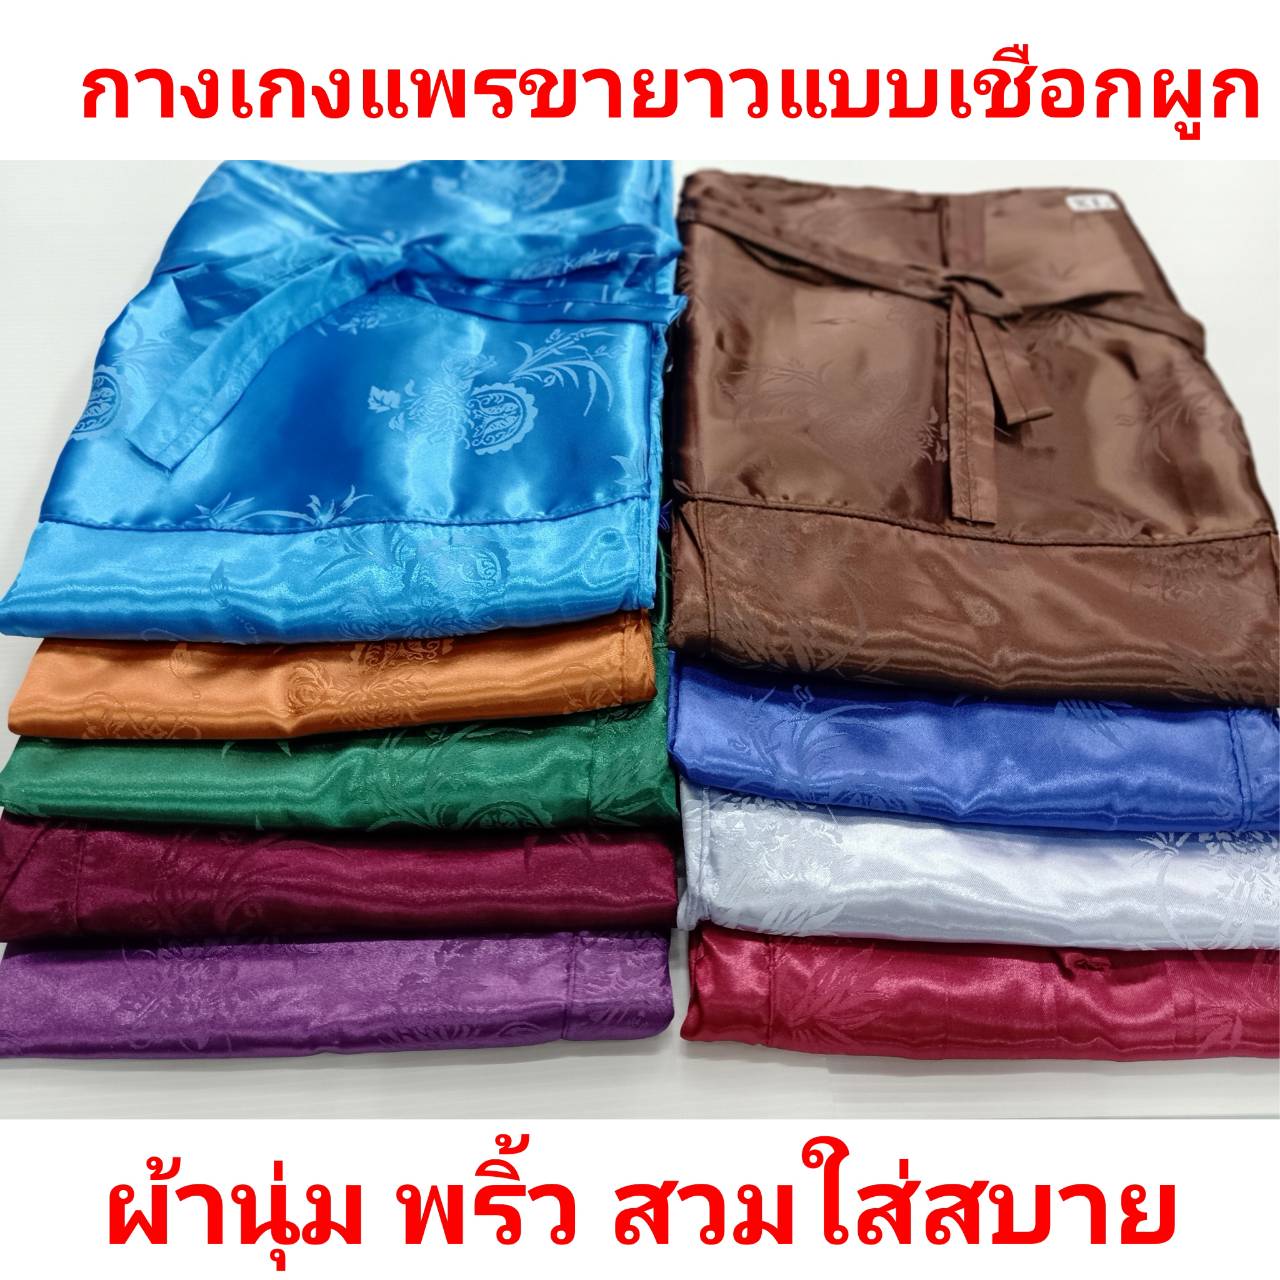 กางเกงผ้าแพรขายาว แบบเชือกผูก กางเกงแพรลำลองเอวได้ถึง 53นิ้ว (L) ผ้าเนื้อดี กางเกงเลผ้าแพร กางเกงนอนผ้าแพร ชุดนอนแพร กางเกงแพรผู้ชาย